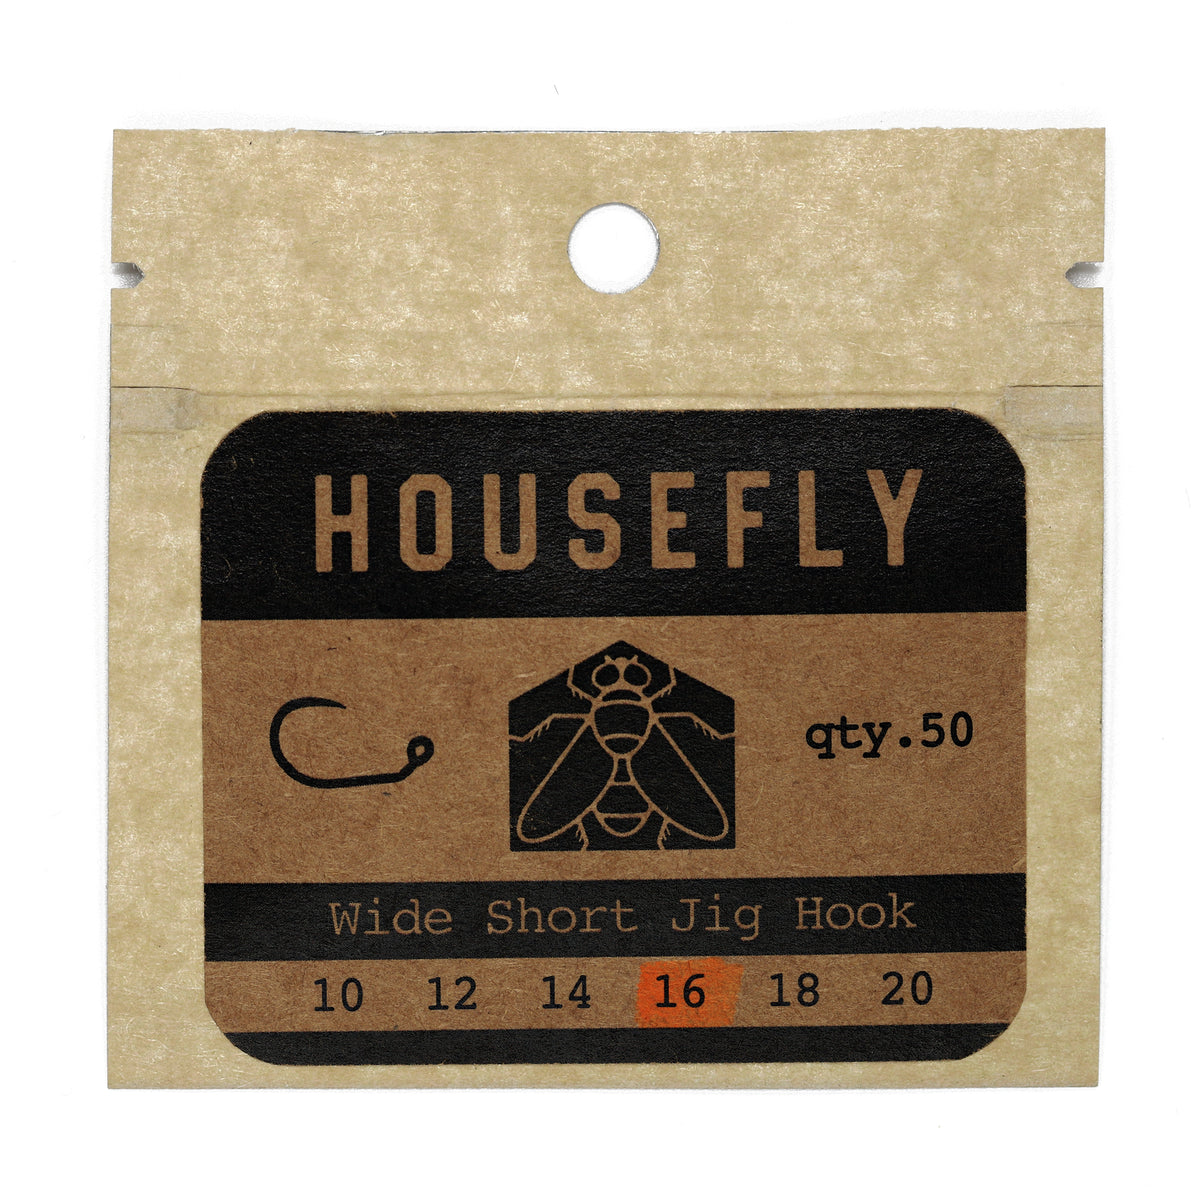 Housefly Wide Short Jig Hook